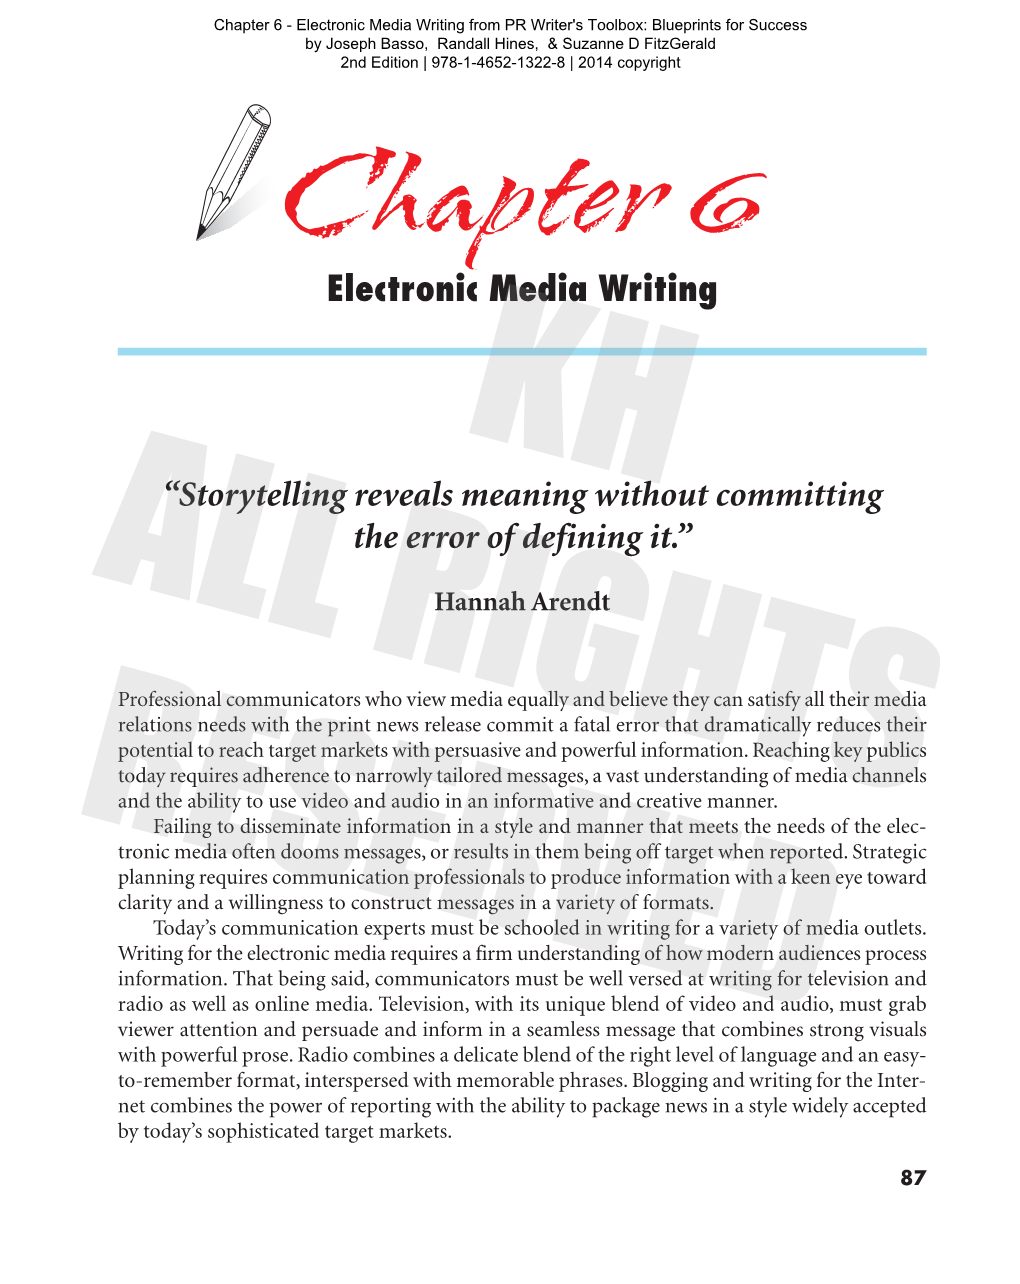 Electronic Media Writing